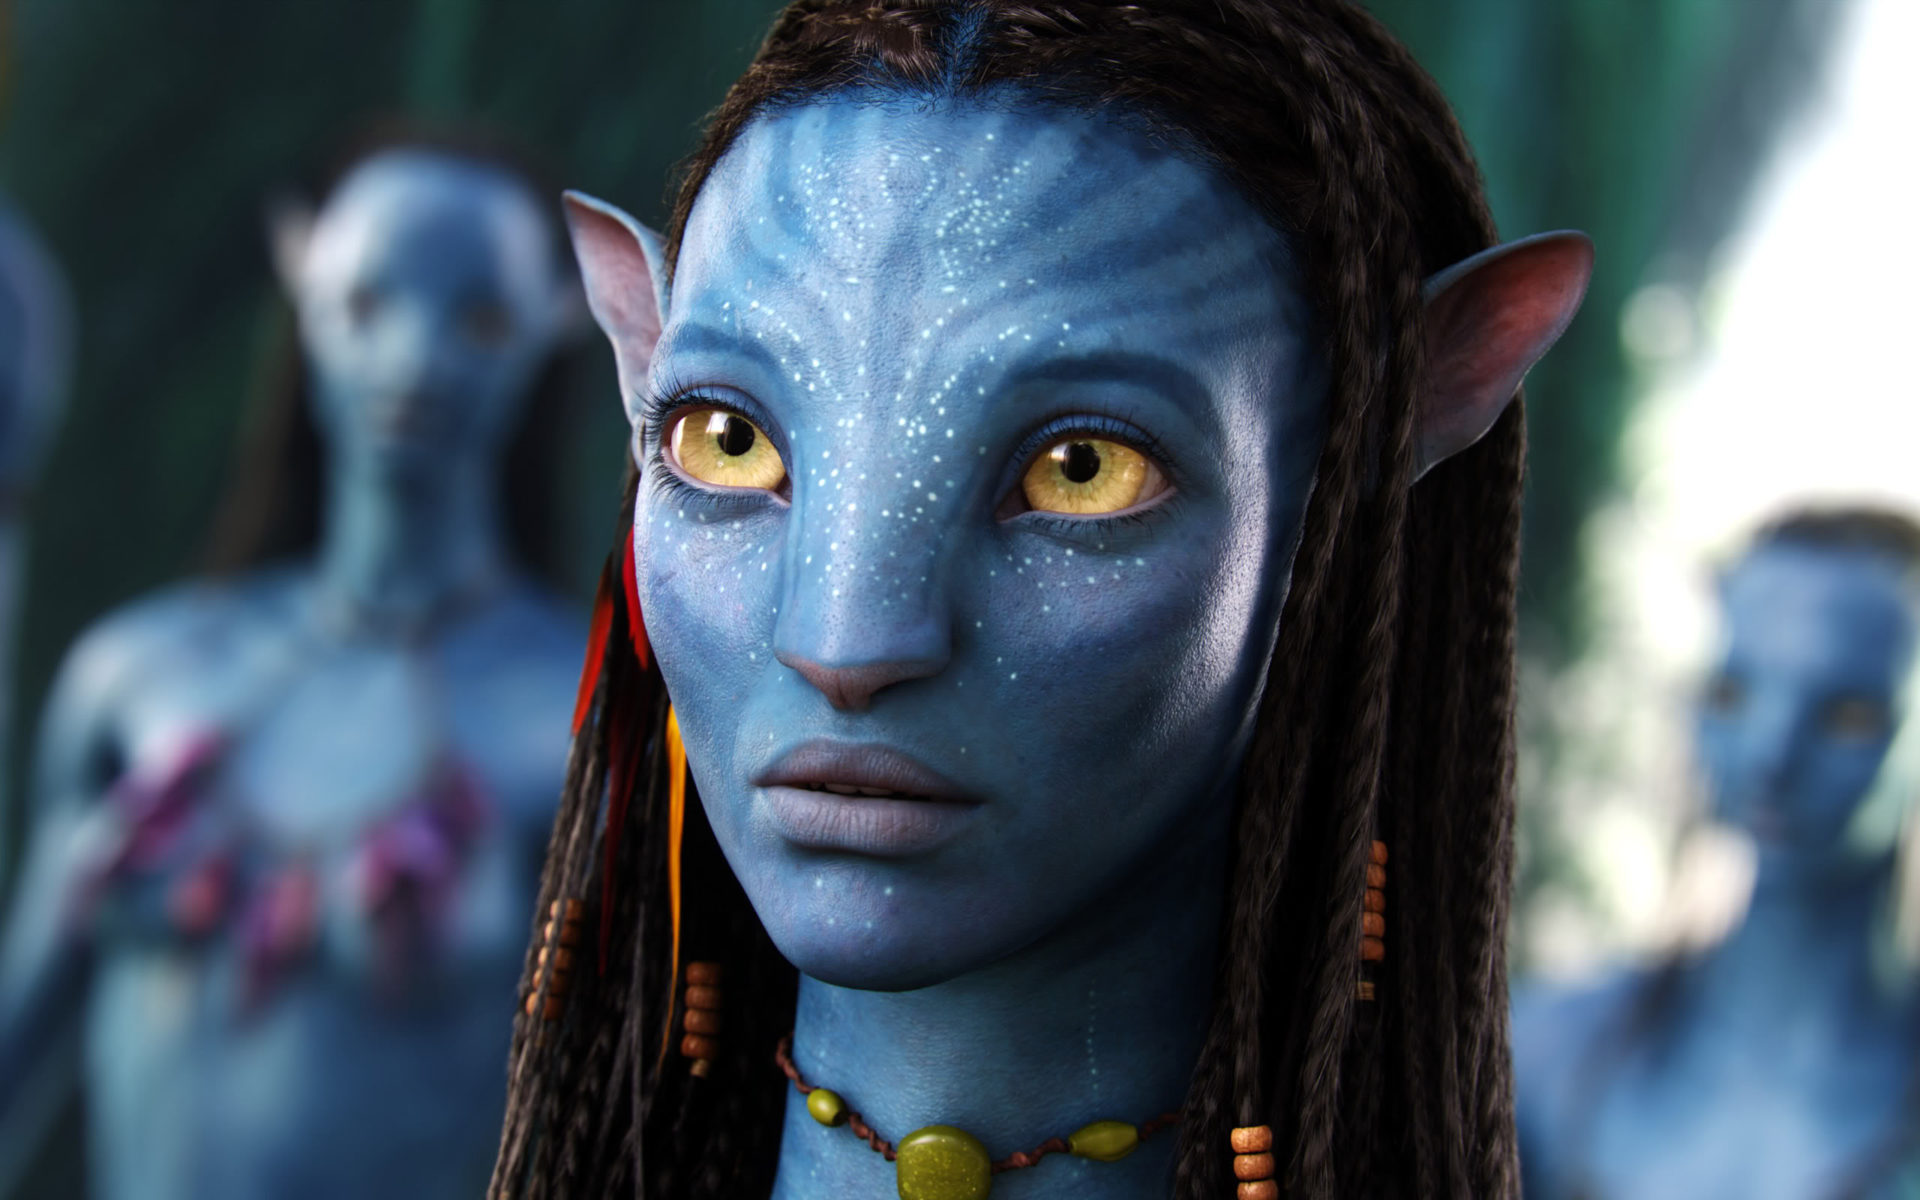 Imagens mostram o mundo mágico das sequências de Avatar